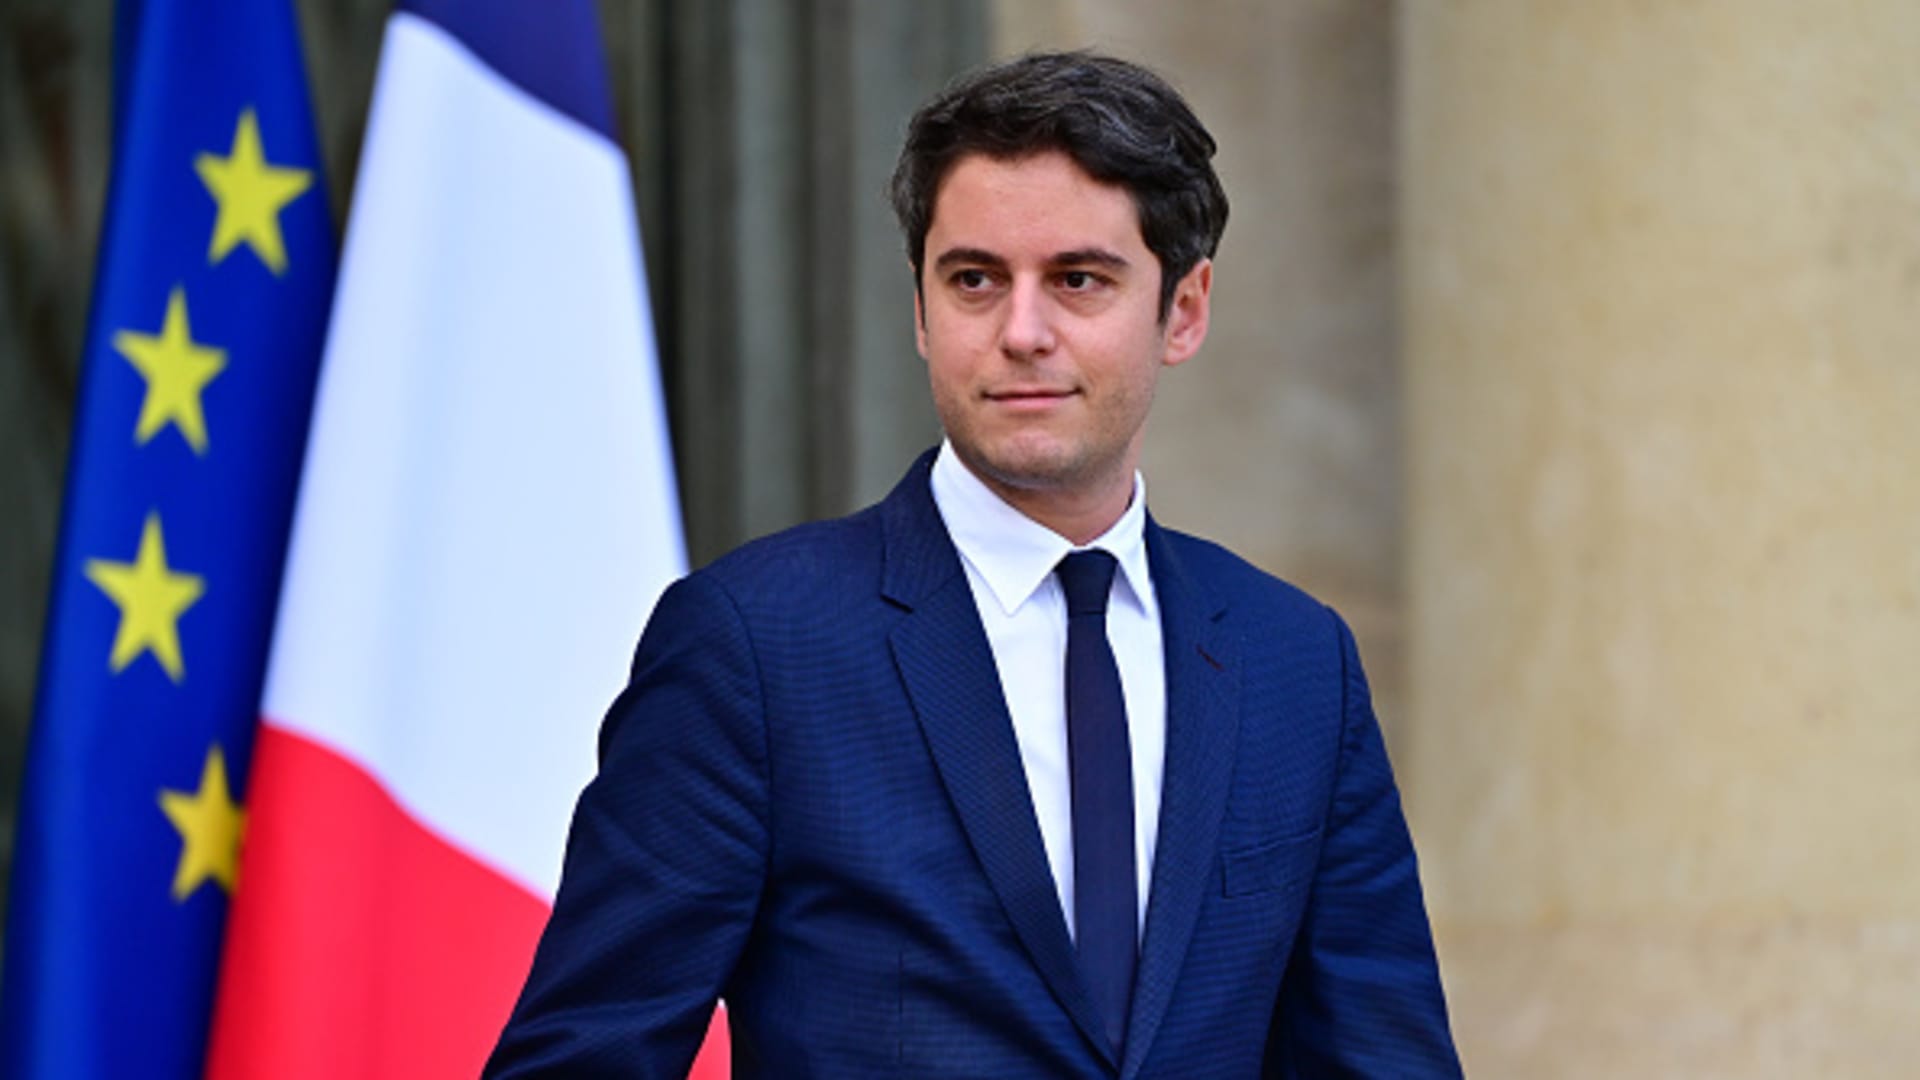 फ्रान्सको सबैभन्दा कान्छो प्रधानमन्त्री बने ३४ वर्षीय ग्याब्रियल